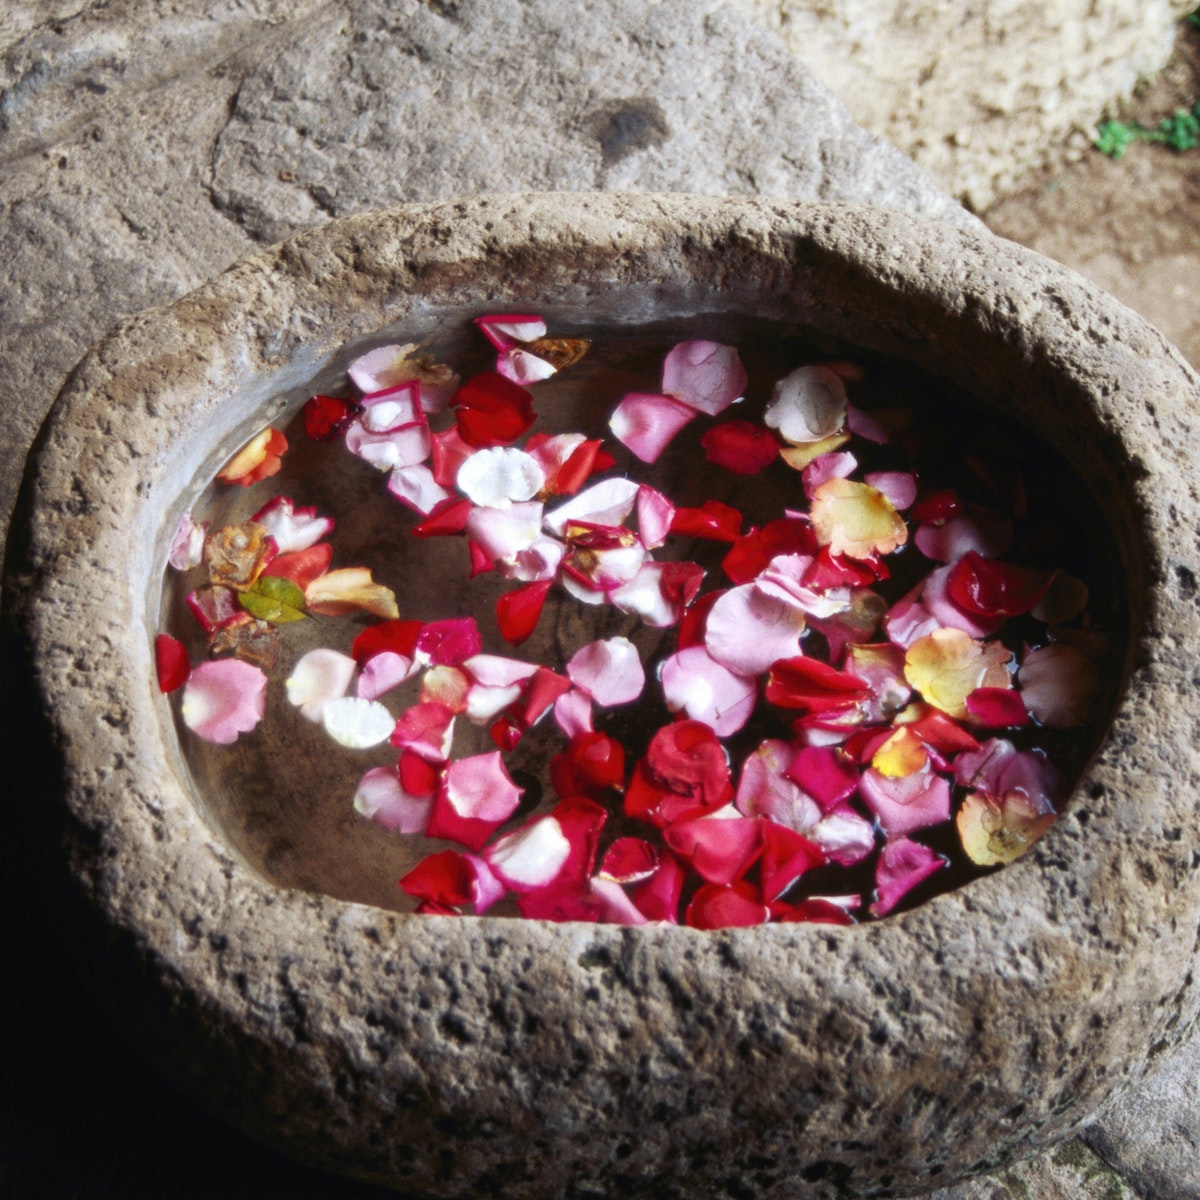 Stone water bowl at Hotel Casa Santa Domingo.